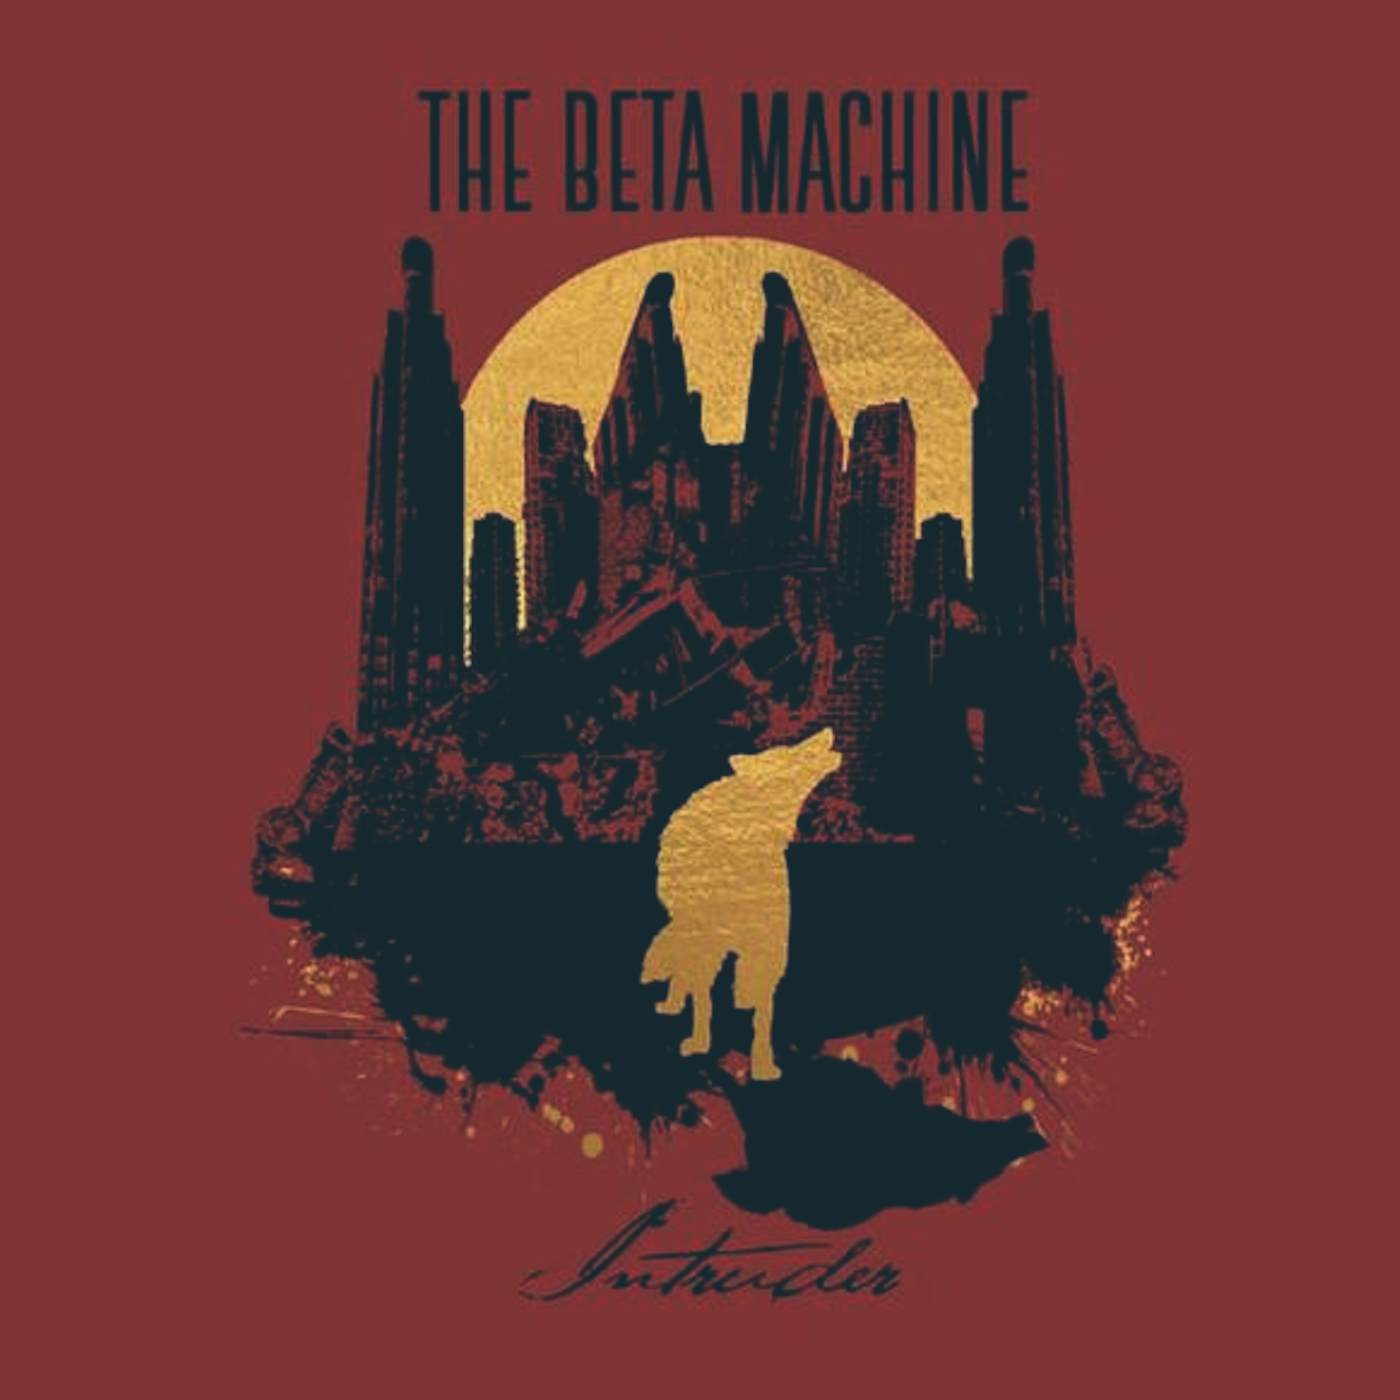 The Beta Machine